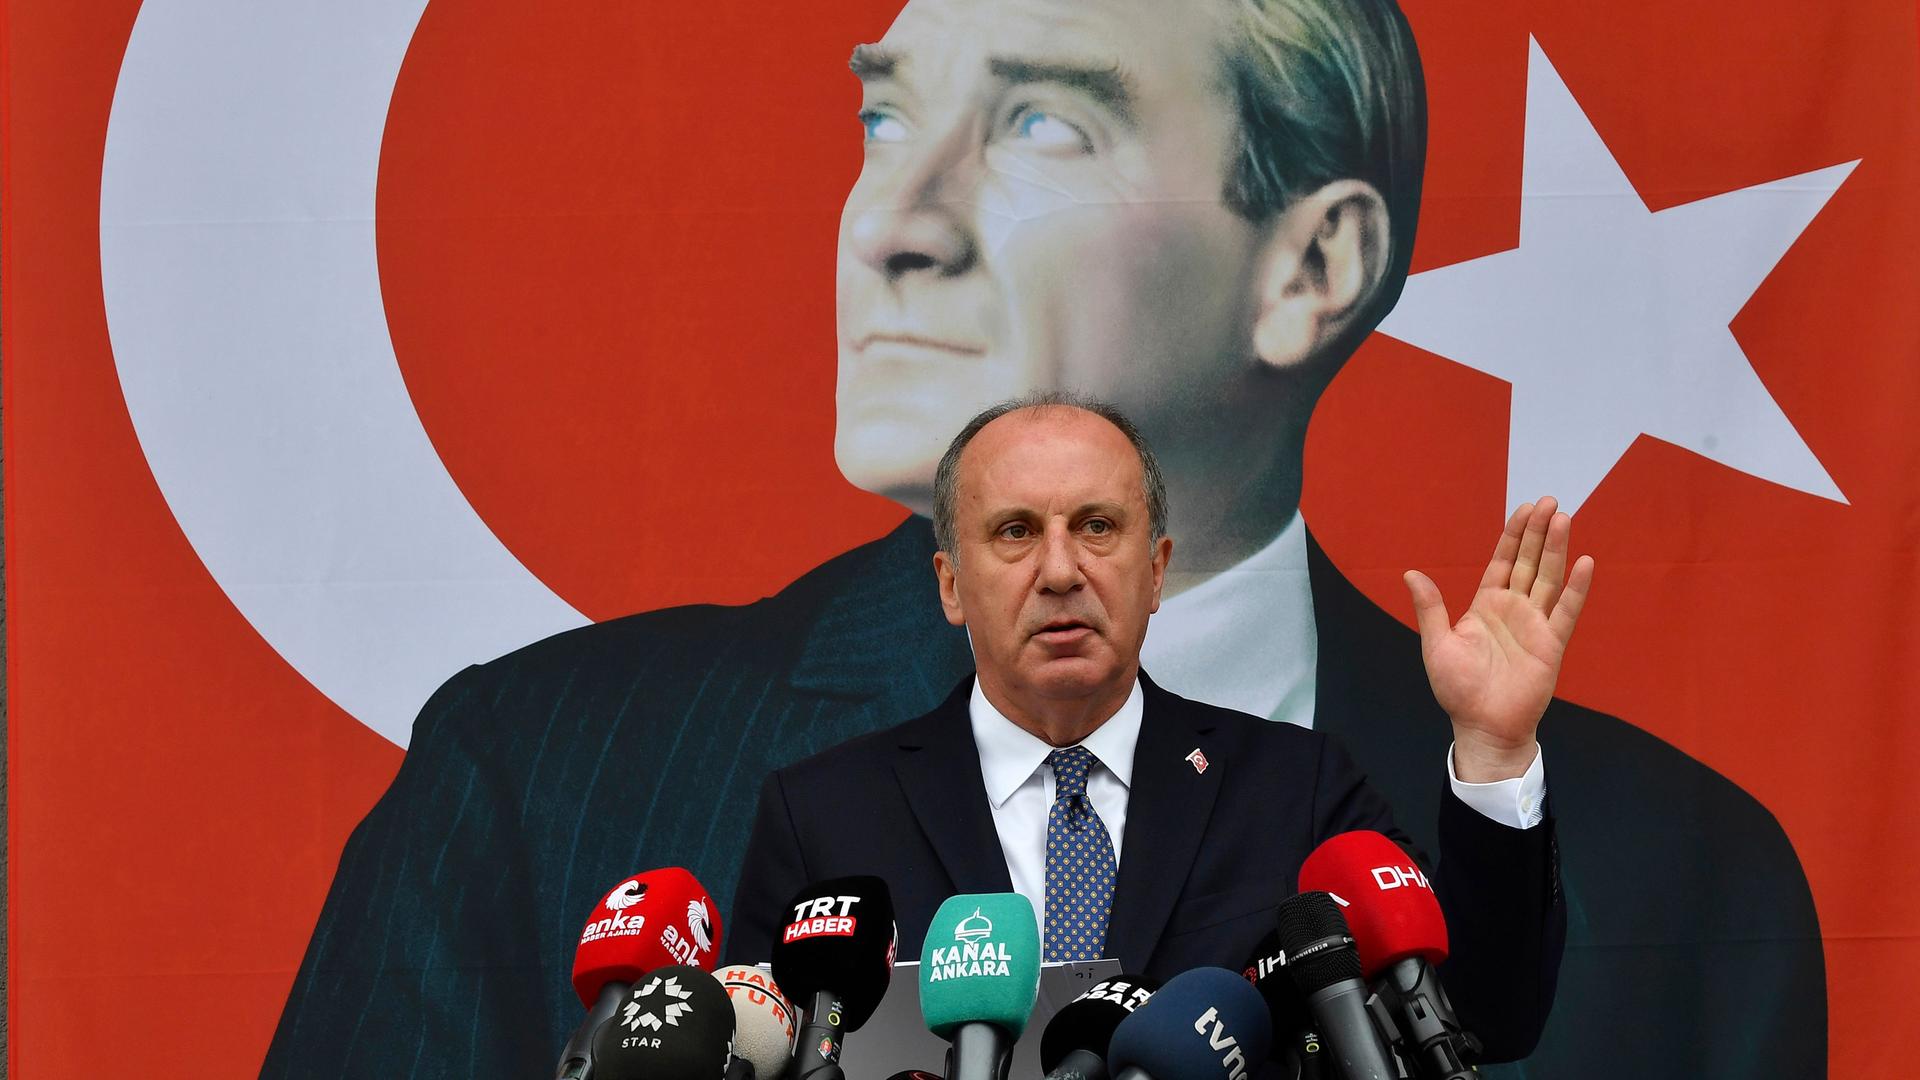 Ince steht an einem Redepult mit vielen Mikrofonen. Im Hintergrund ist ein Plakat, dass den Gründer der modernen Türkei, Atatürk, zeigt.